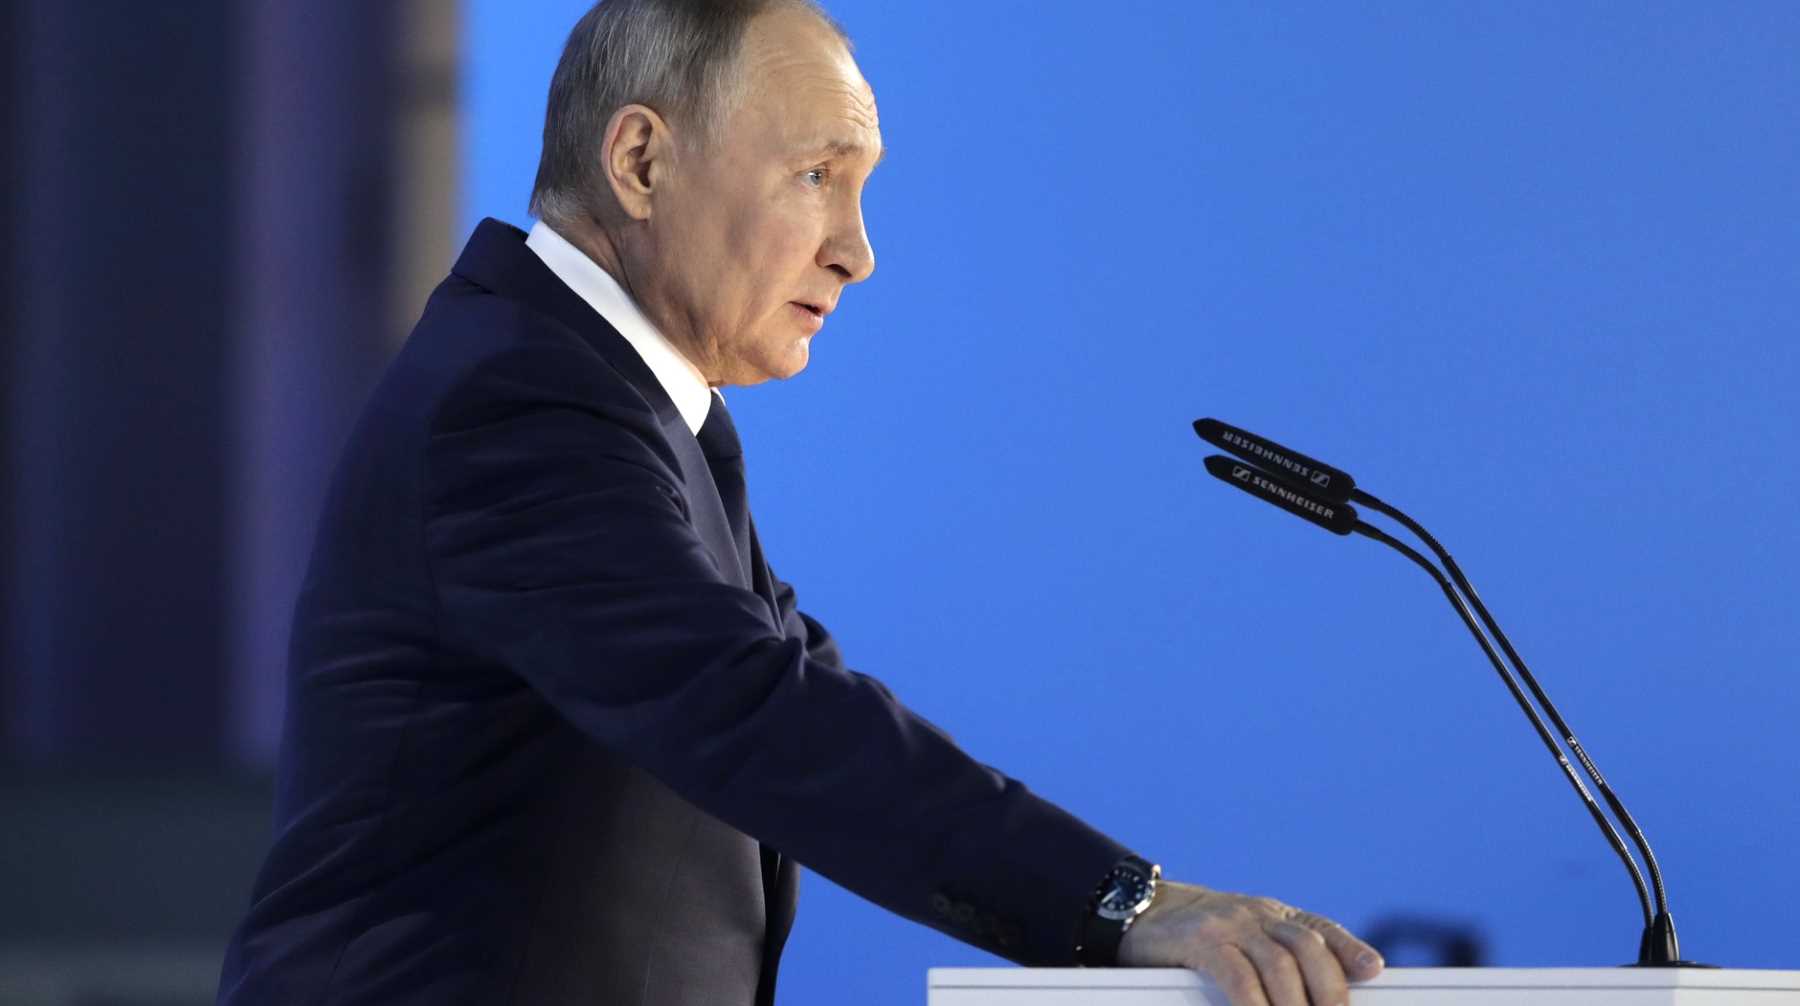 Президент отметил, что Москва ведет себя довольно сдержанно, видя хамство других стран Фото: © Global Look Press / Kremlin Pool